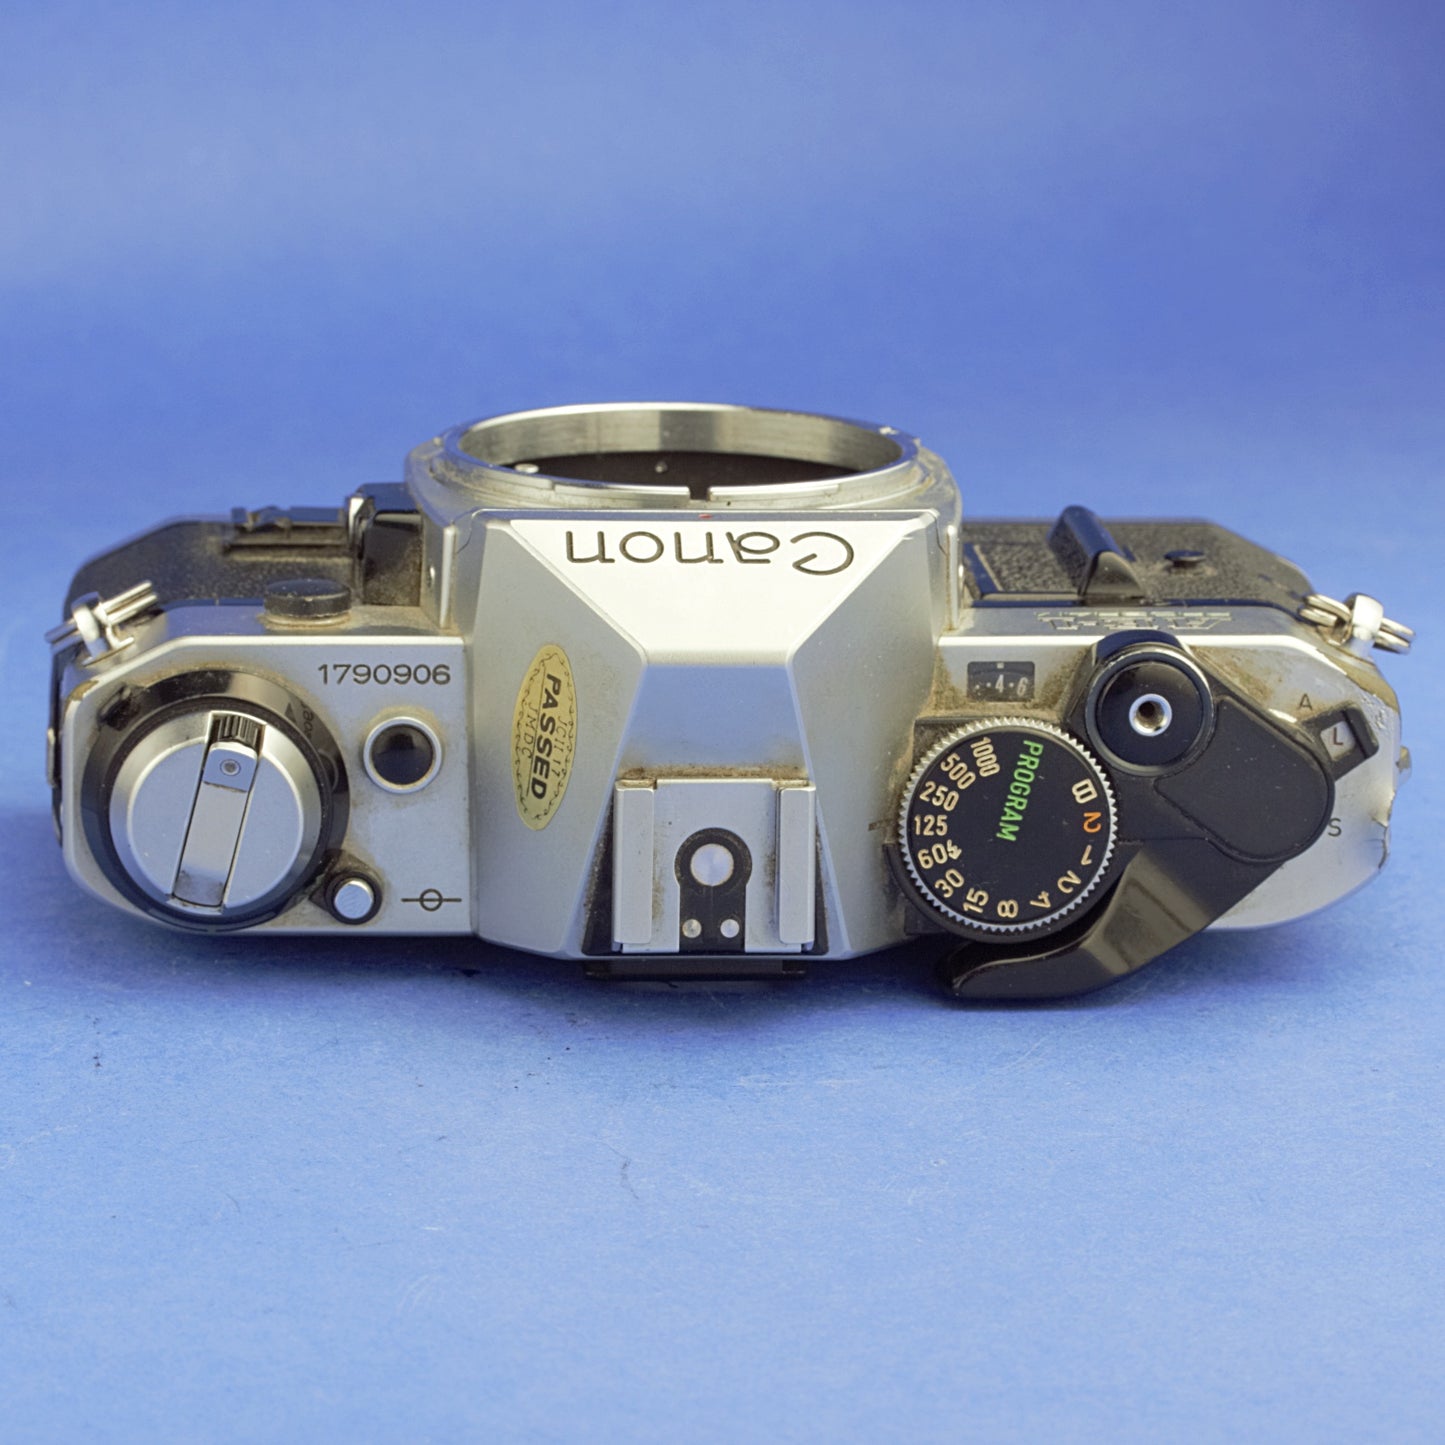 Canon AE-1 Program Film Camera Body